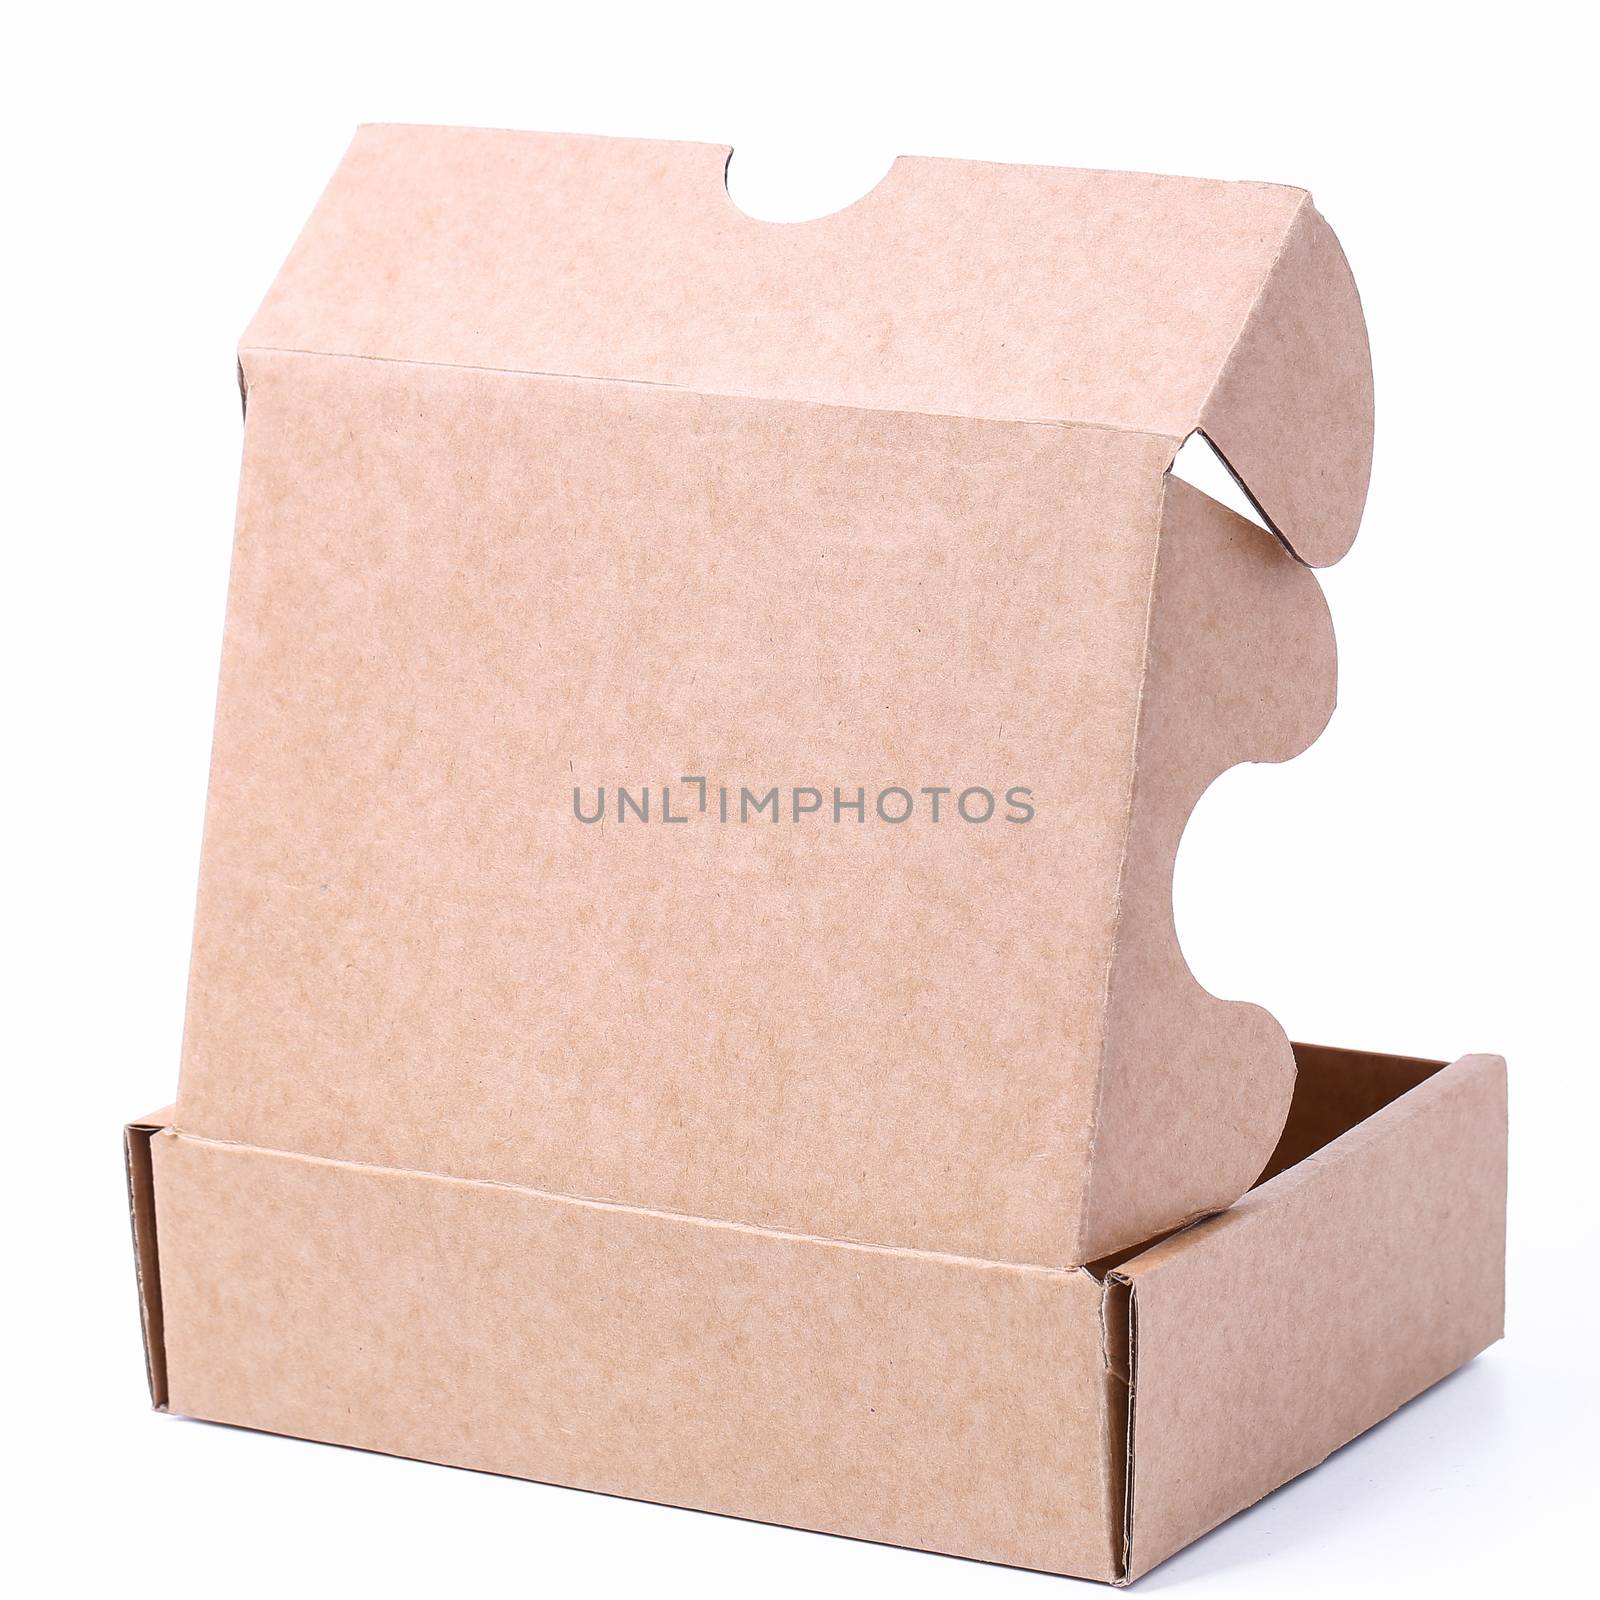 Carton boxes by rufatjumali